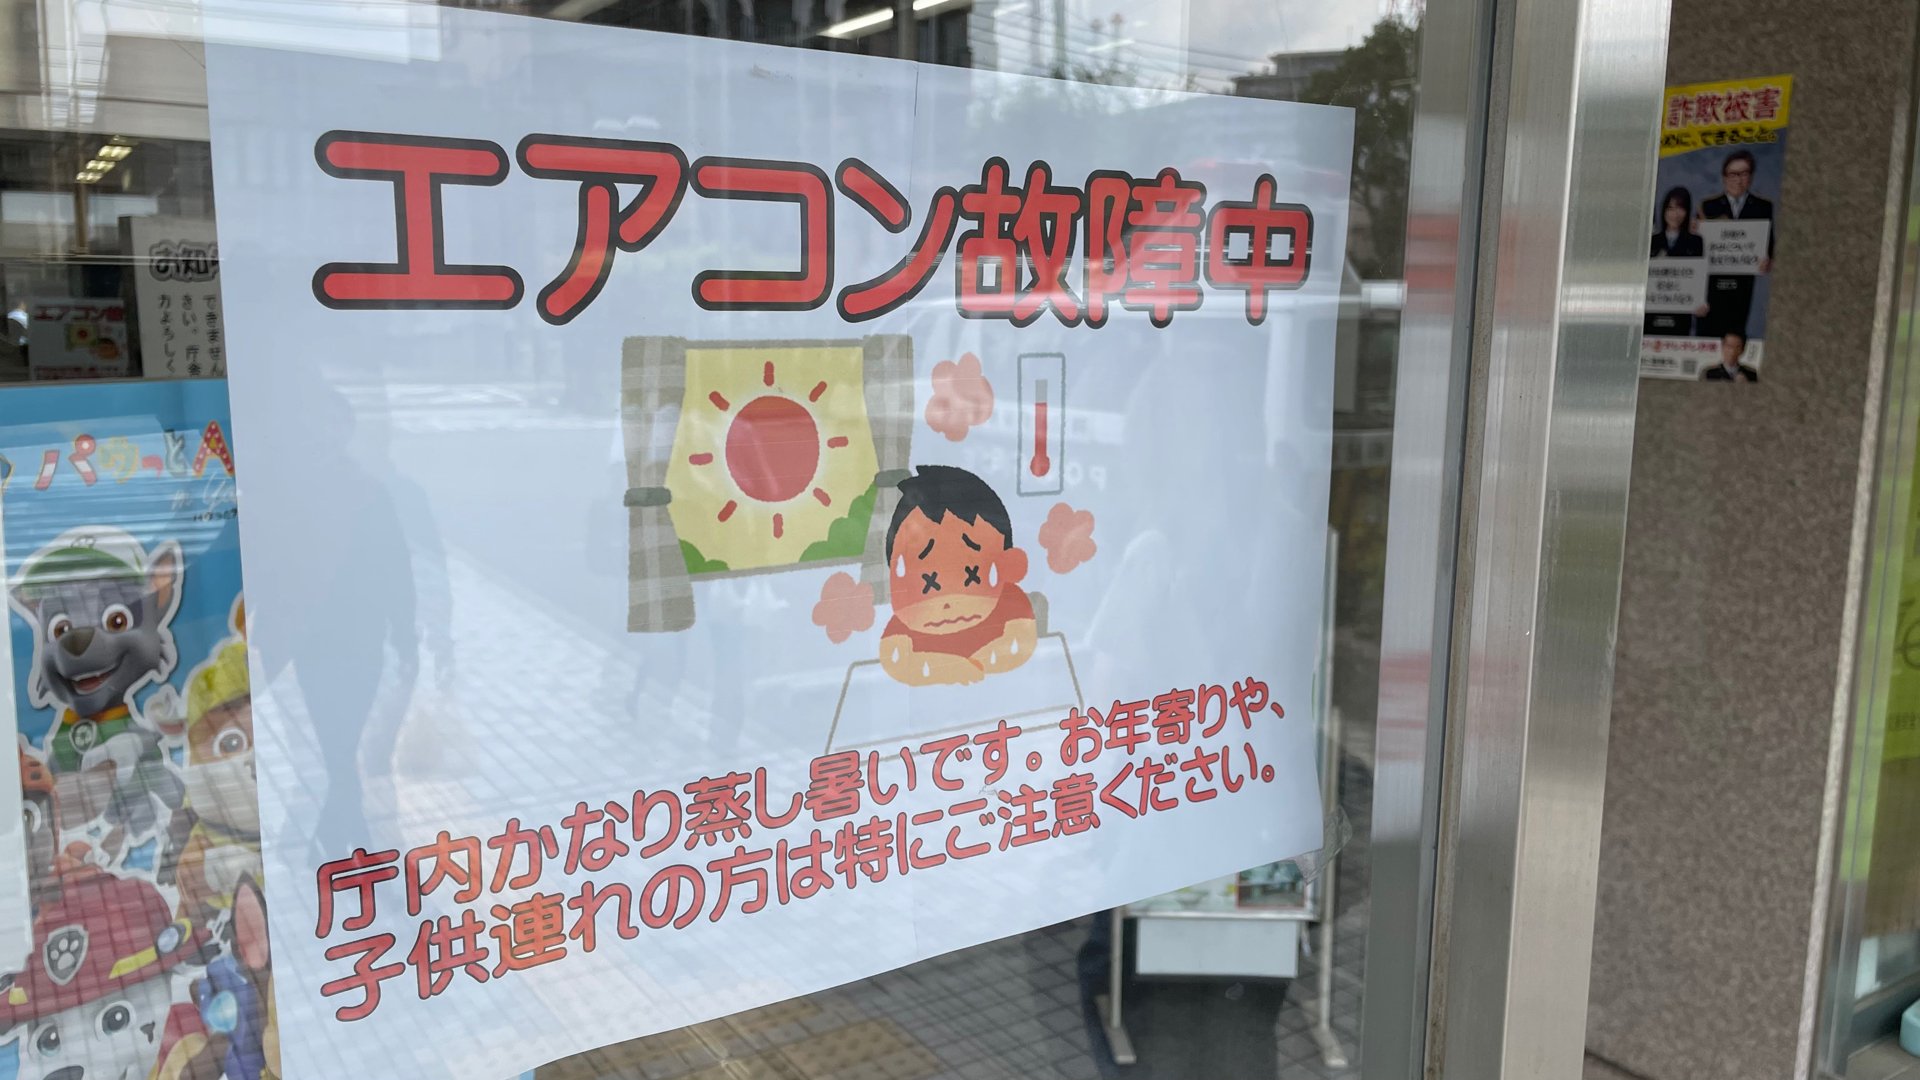 川崎警察署の空調設備が故障し冷房使えず　猛暑の中、留置場の容疑者を別の署に移送する対応も　神奈川県警